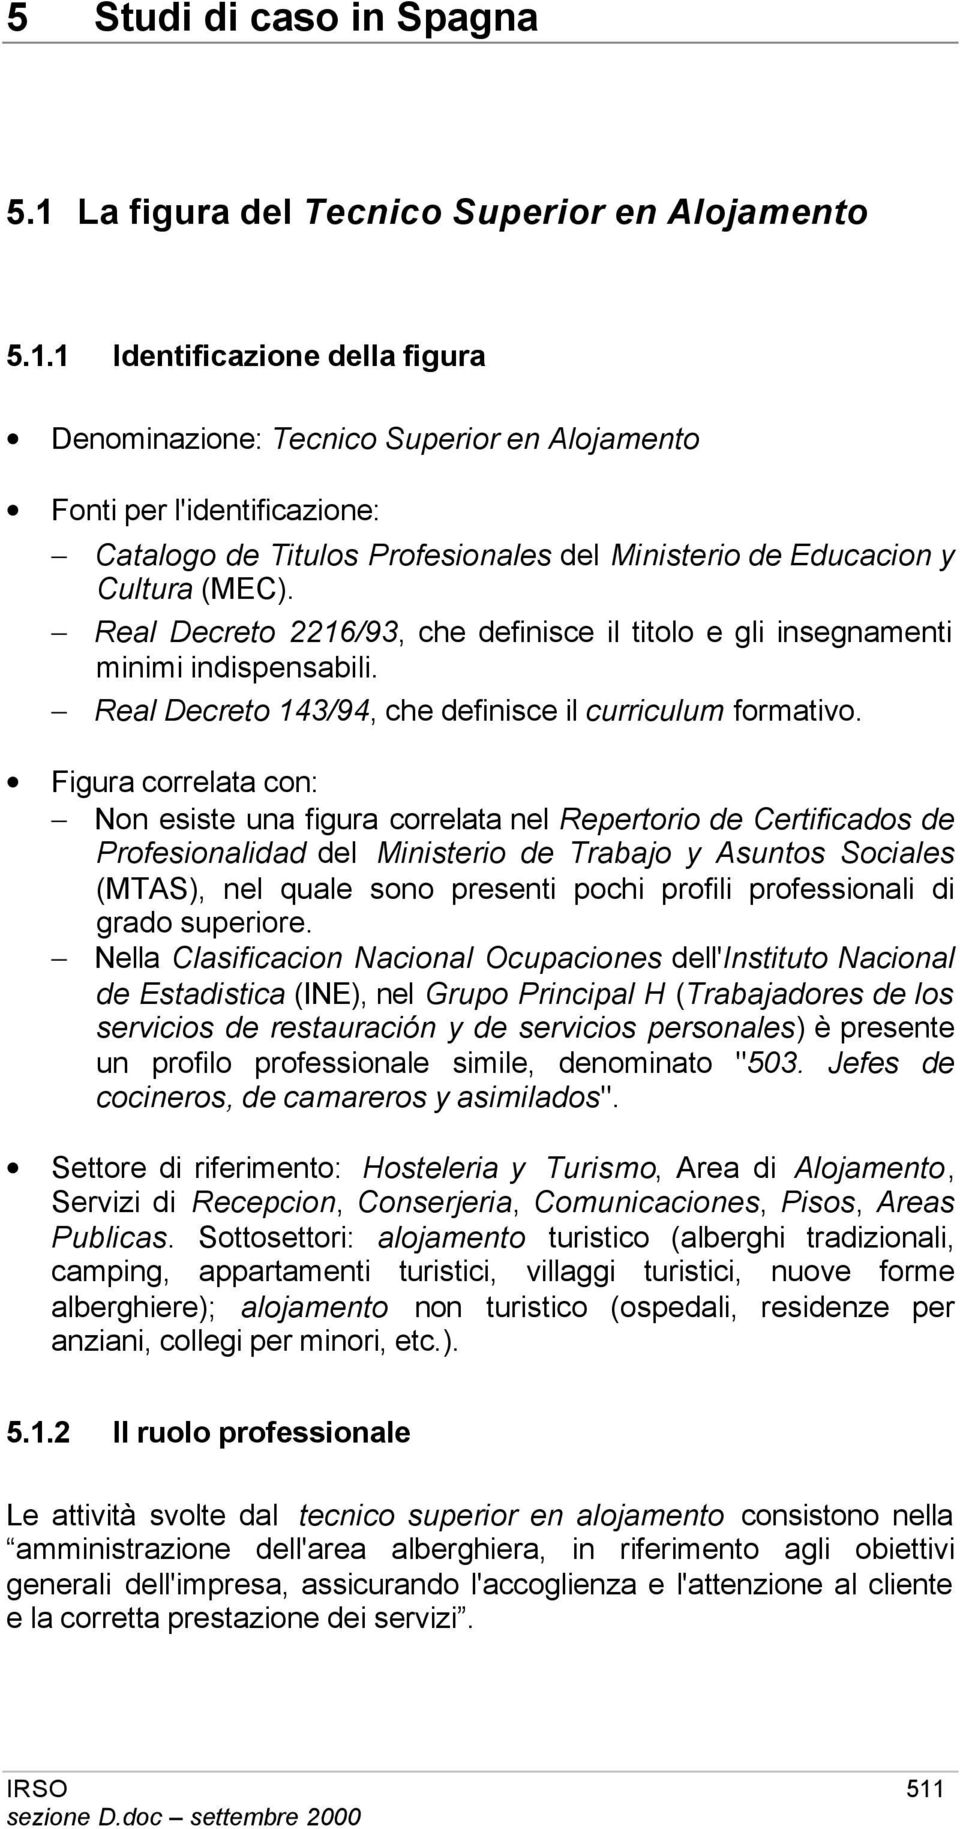 1 Identificazione della figura Denominazione: Tecnico Superior en Alojamento Fonti per l'identificazione: Catalogo de Titulos Profesionales del Ministerio de Educacion y Cultura (MEC).